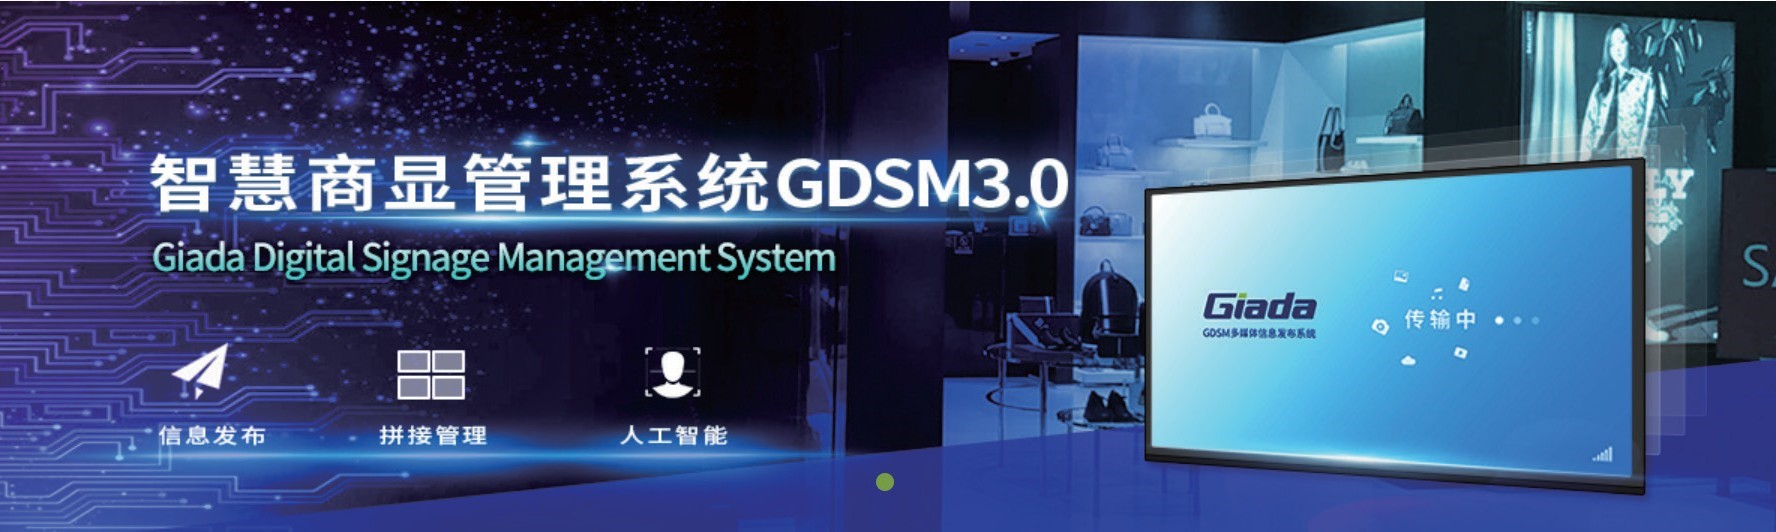 【杰和科技】 GDSM--新一代智慧商显管理系统